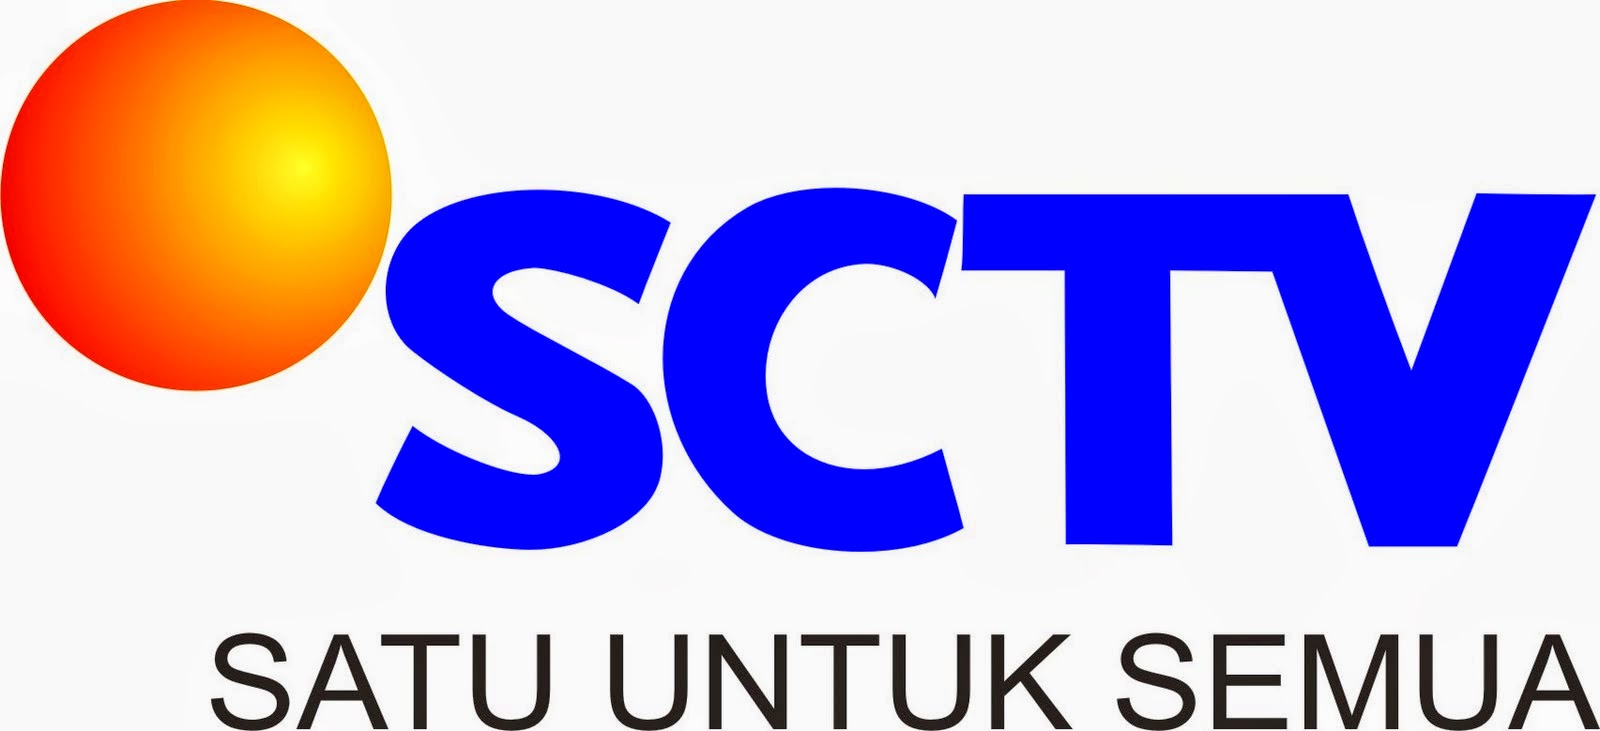 LOGO SCTV  Gambar Logo